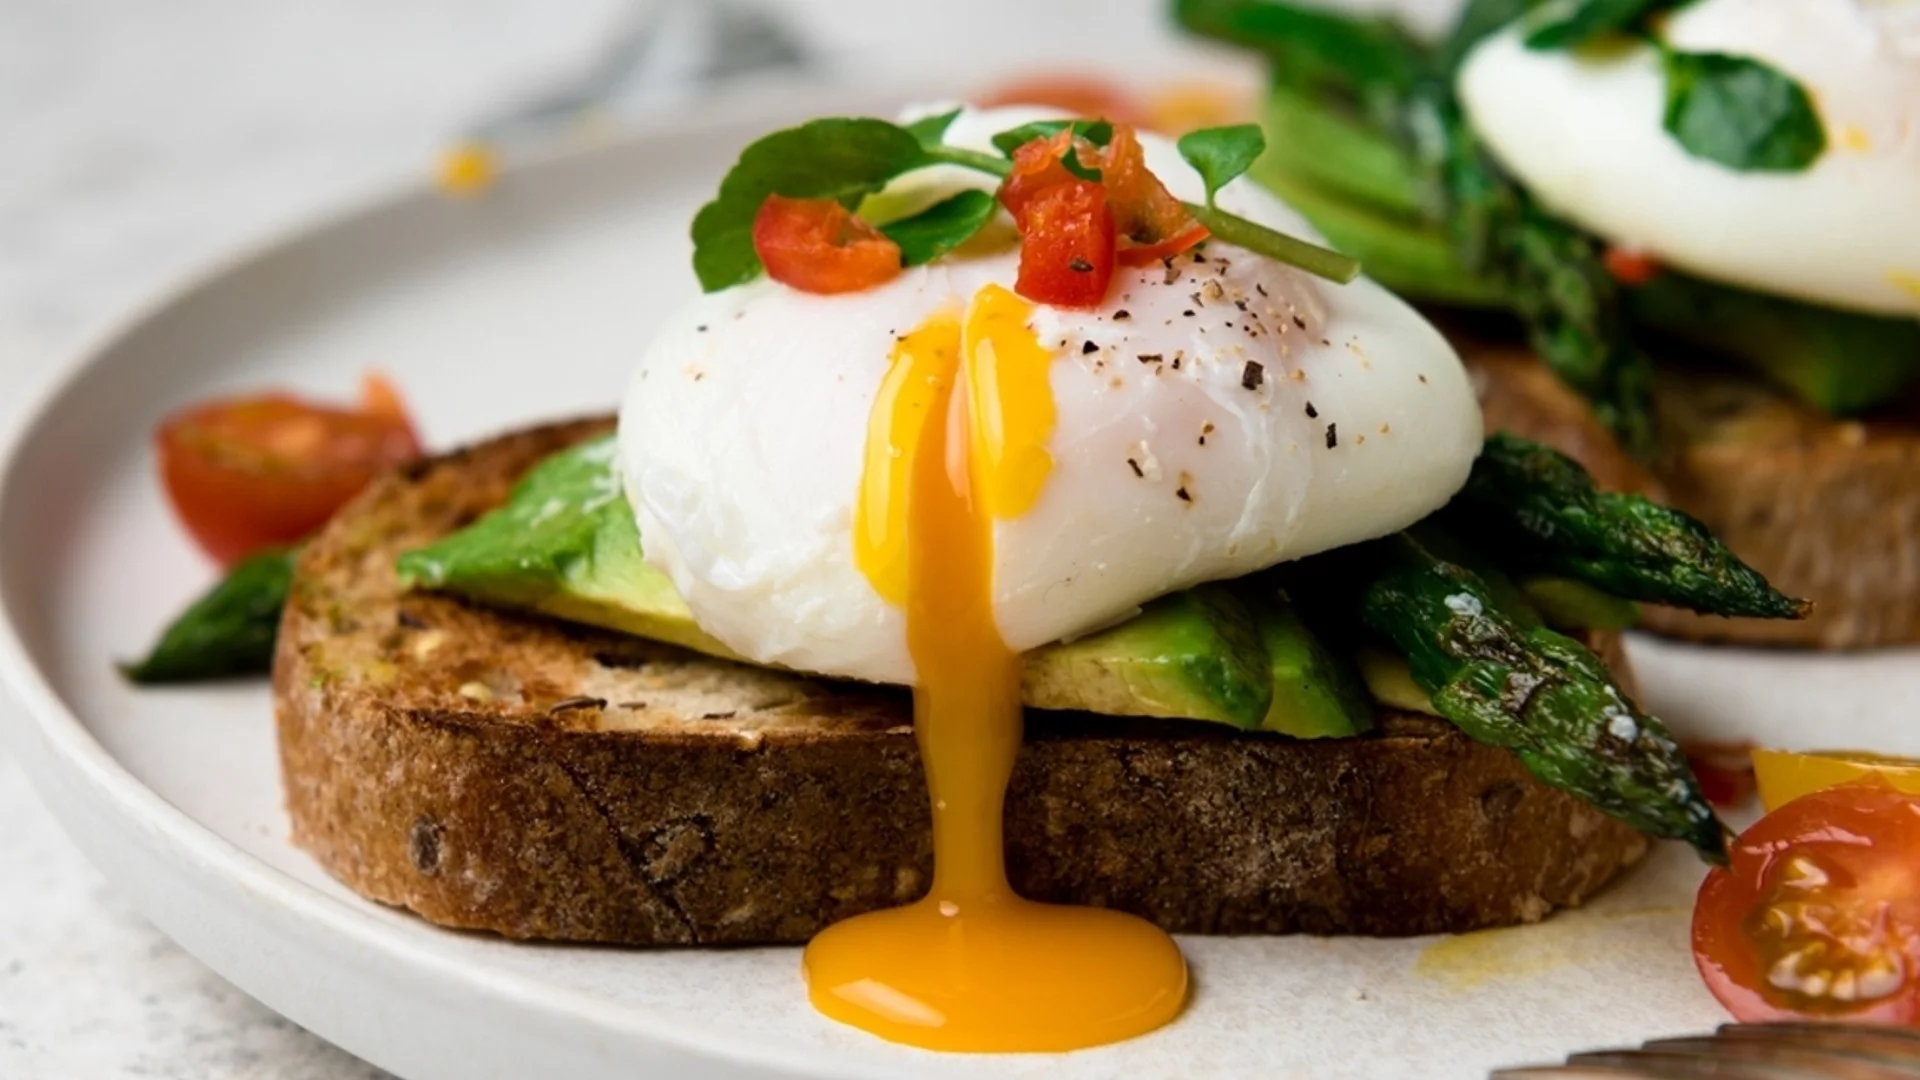 Безопасно ли е да се ядат рохки яйца?